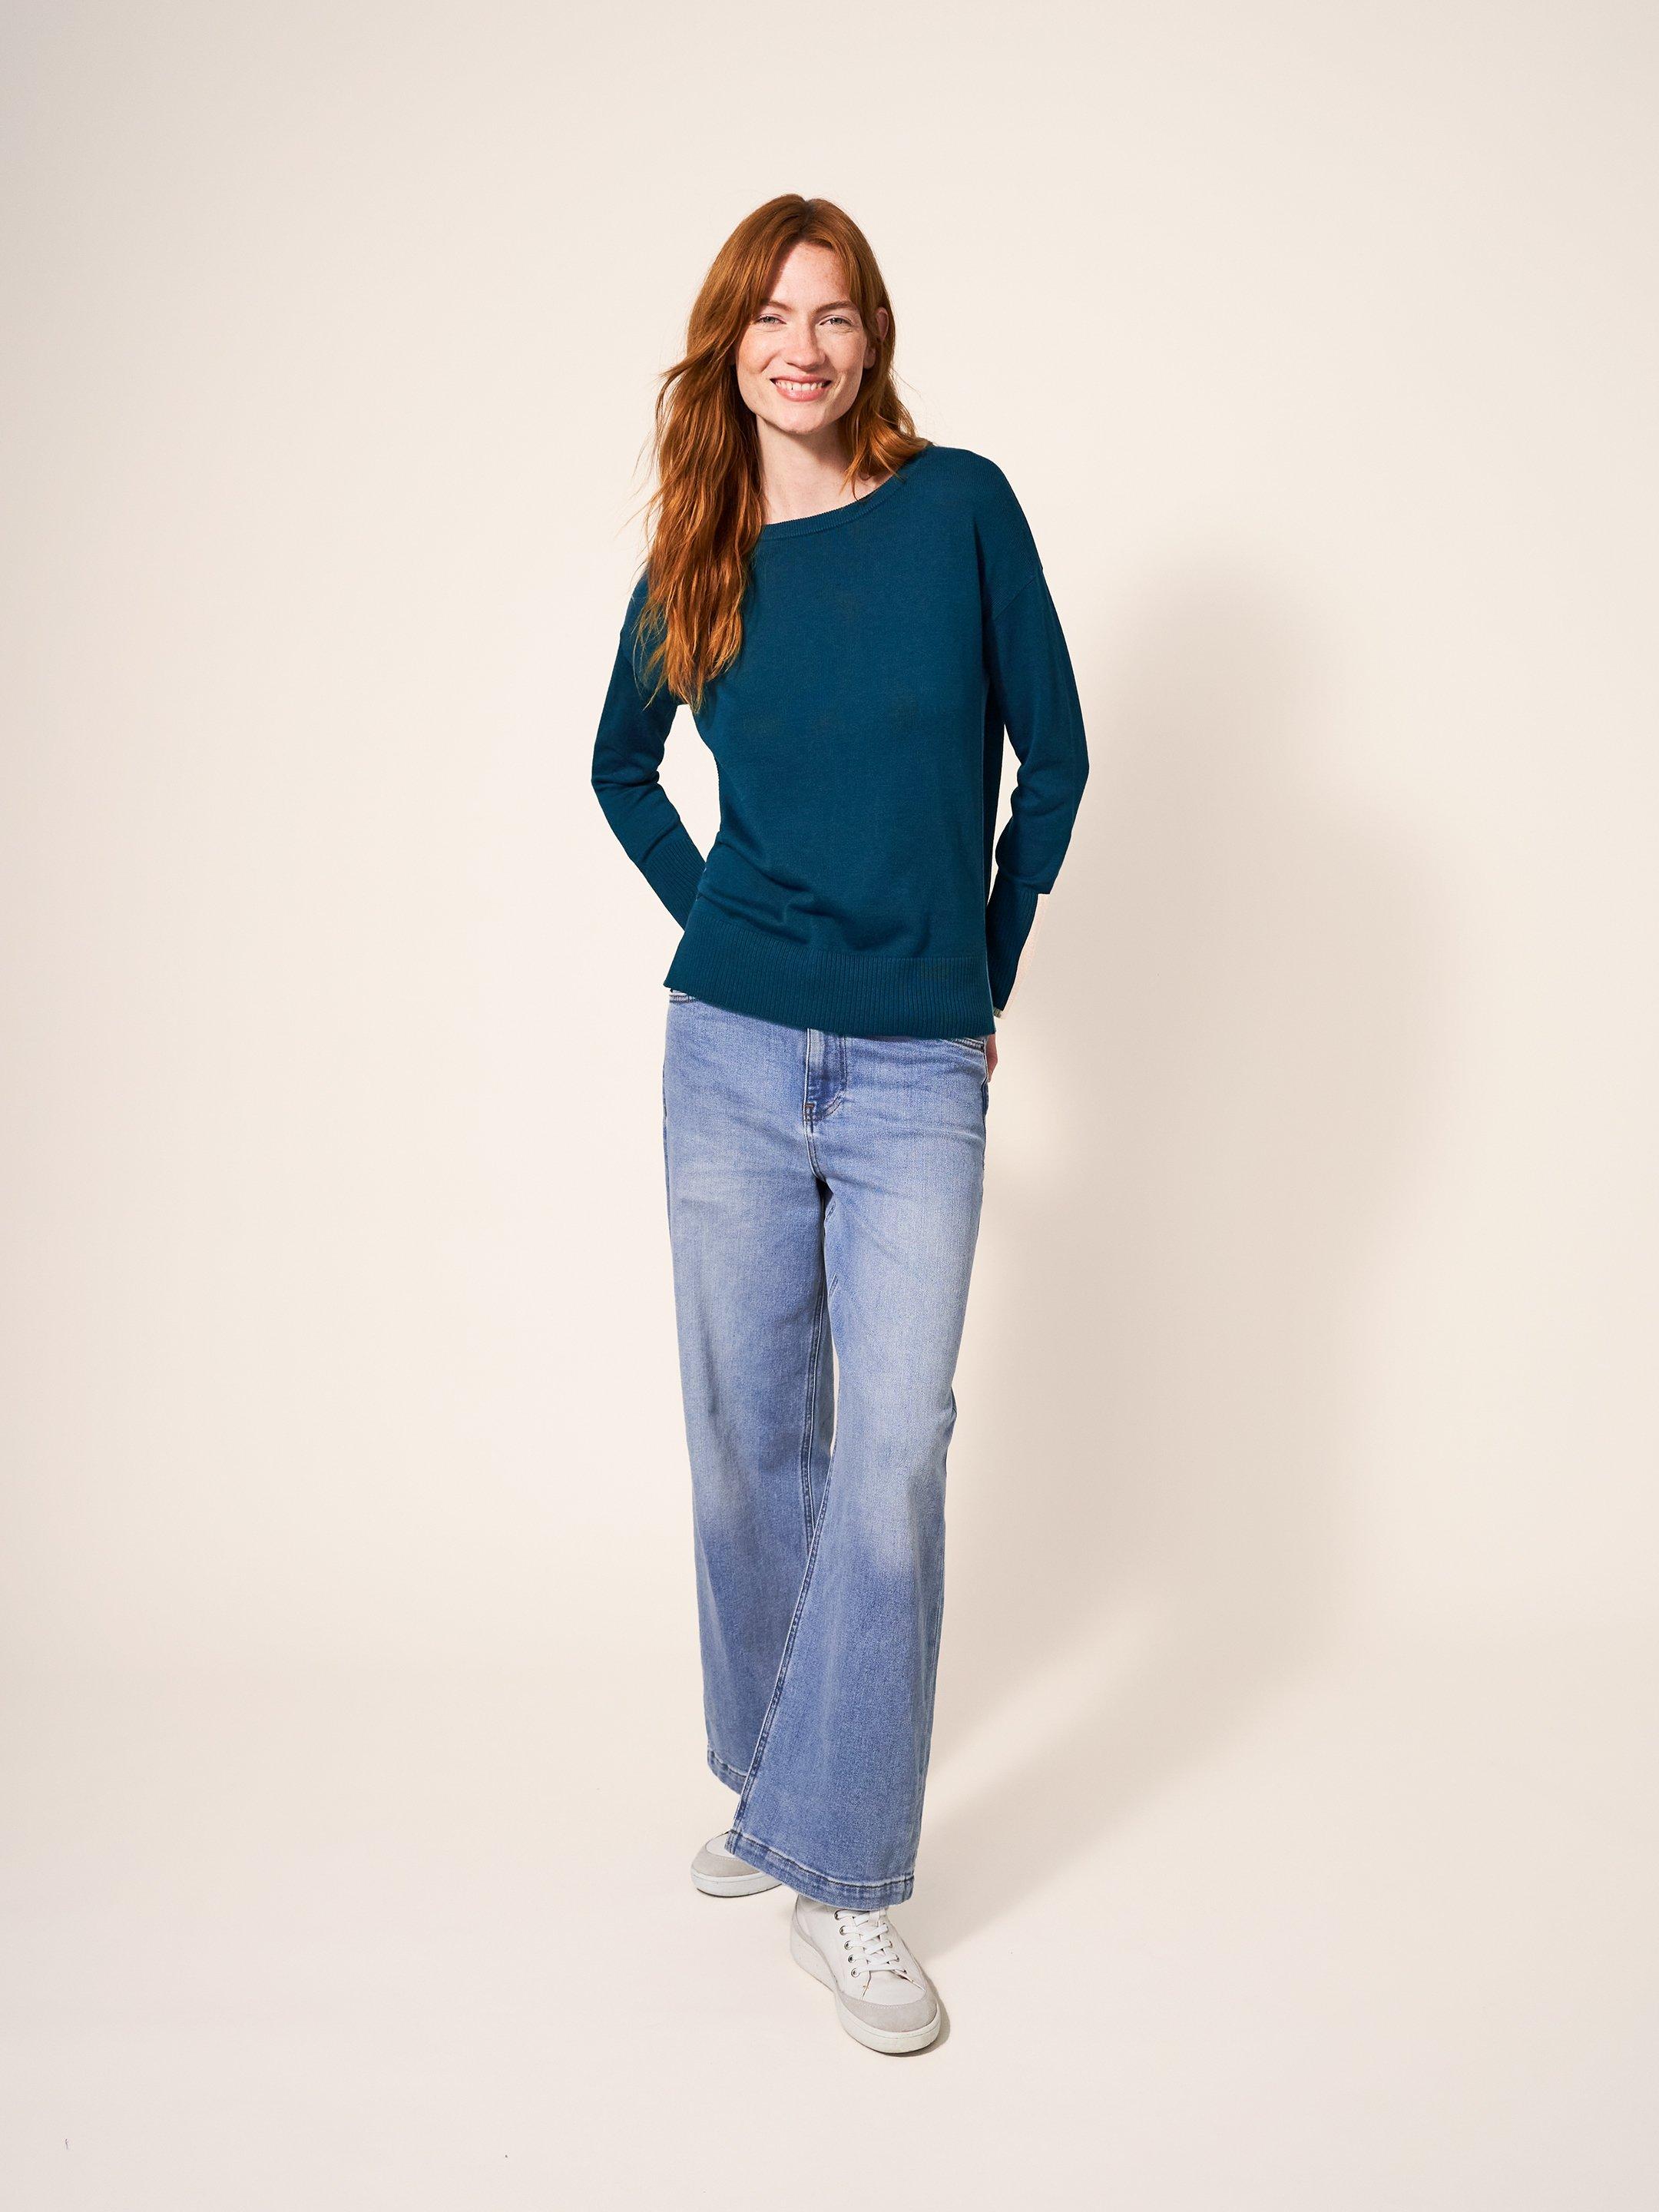 Olive Knitted Jumper in DK TEAL - MODEL FRONT